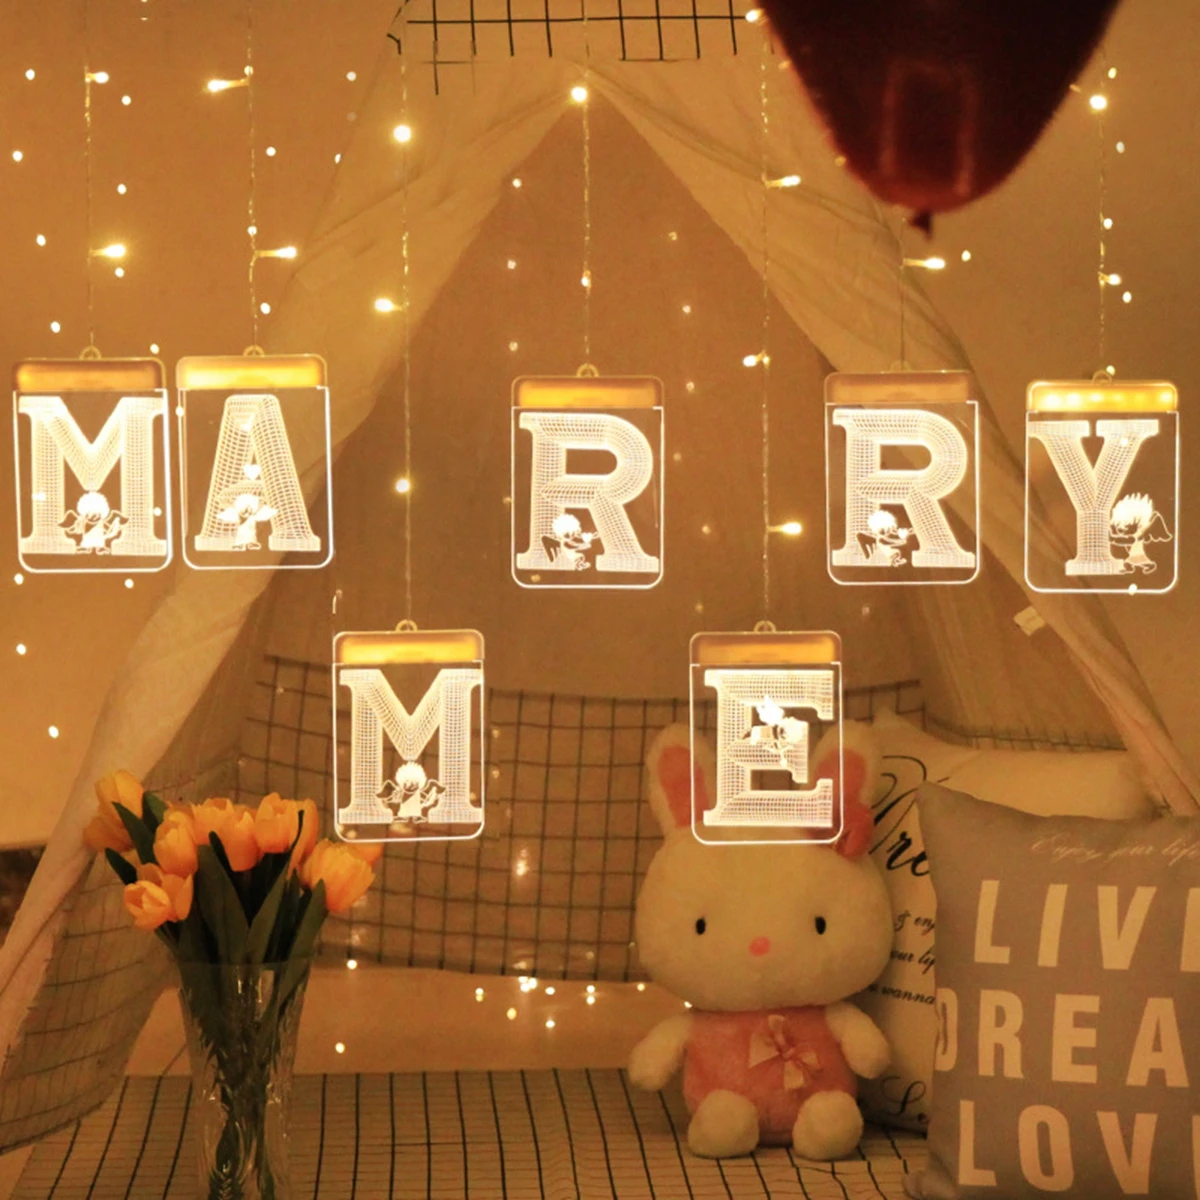 Huiran Love Marry Me светодиодный светильник-свеча в деревенском стиле, украшение для свадебного стола, светильник с буквенным принтом, подарок на свадьбу